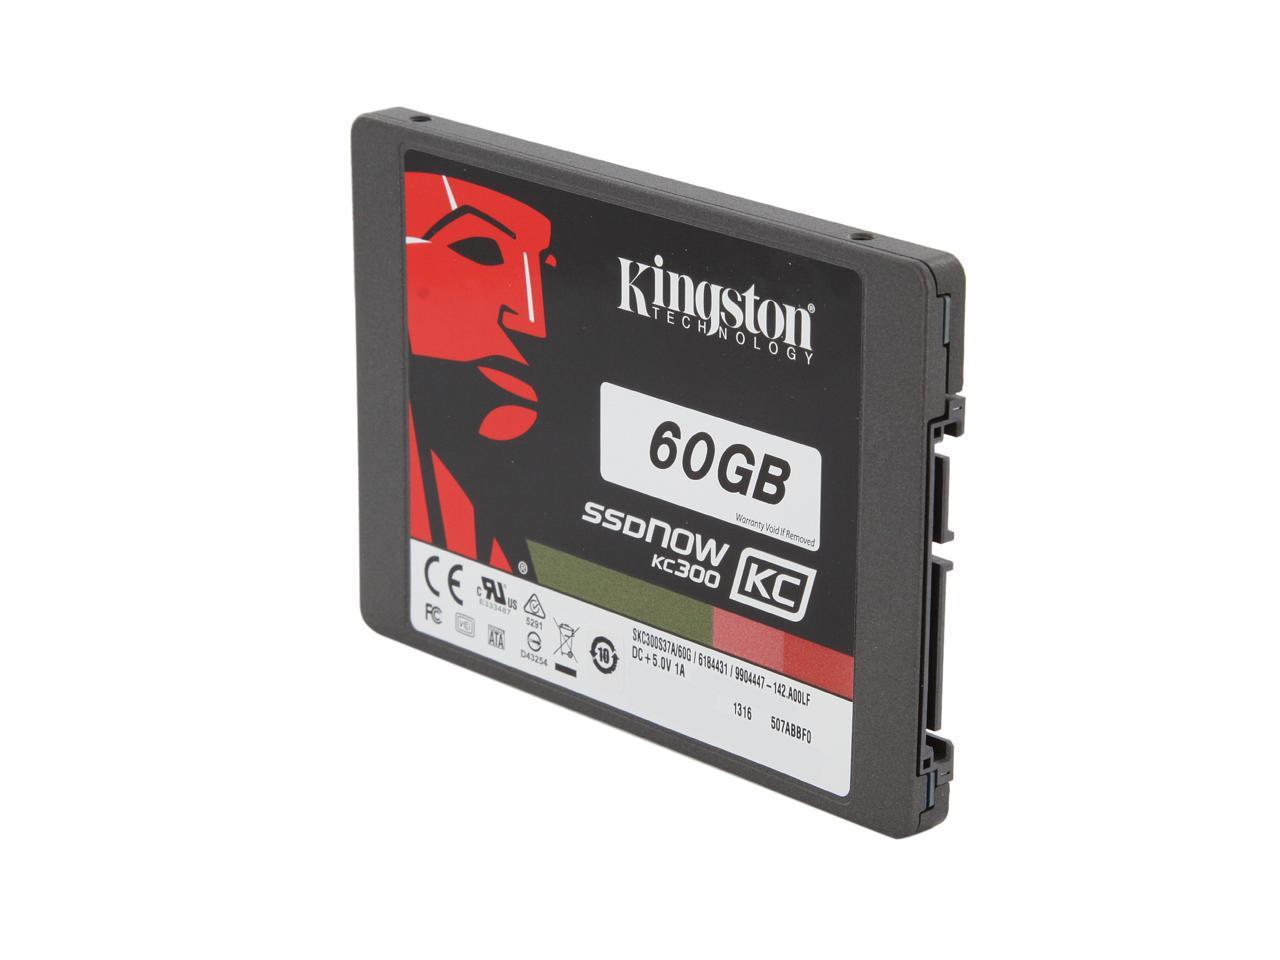 Kingston Kingston SSD NOW KC300 60GB 